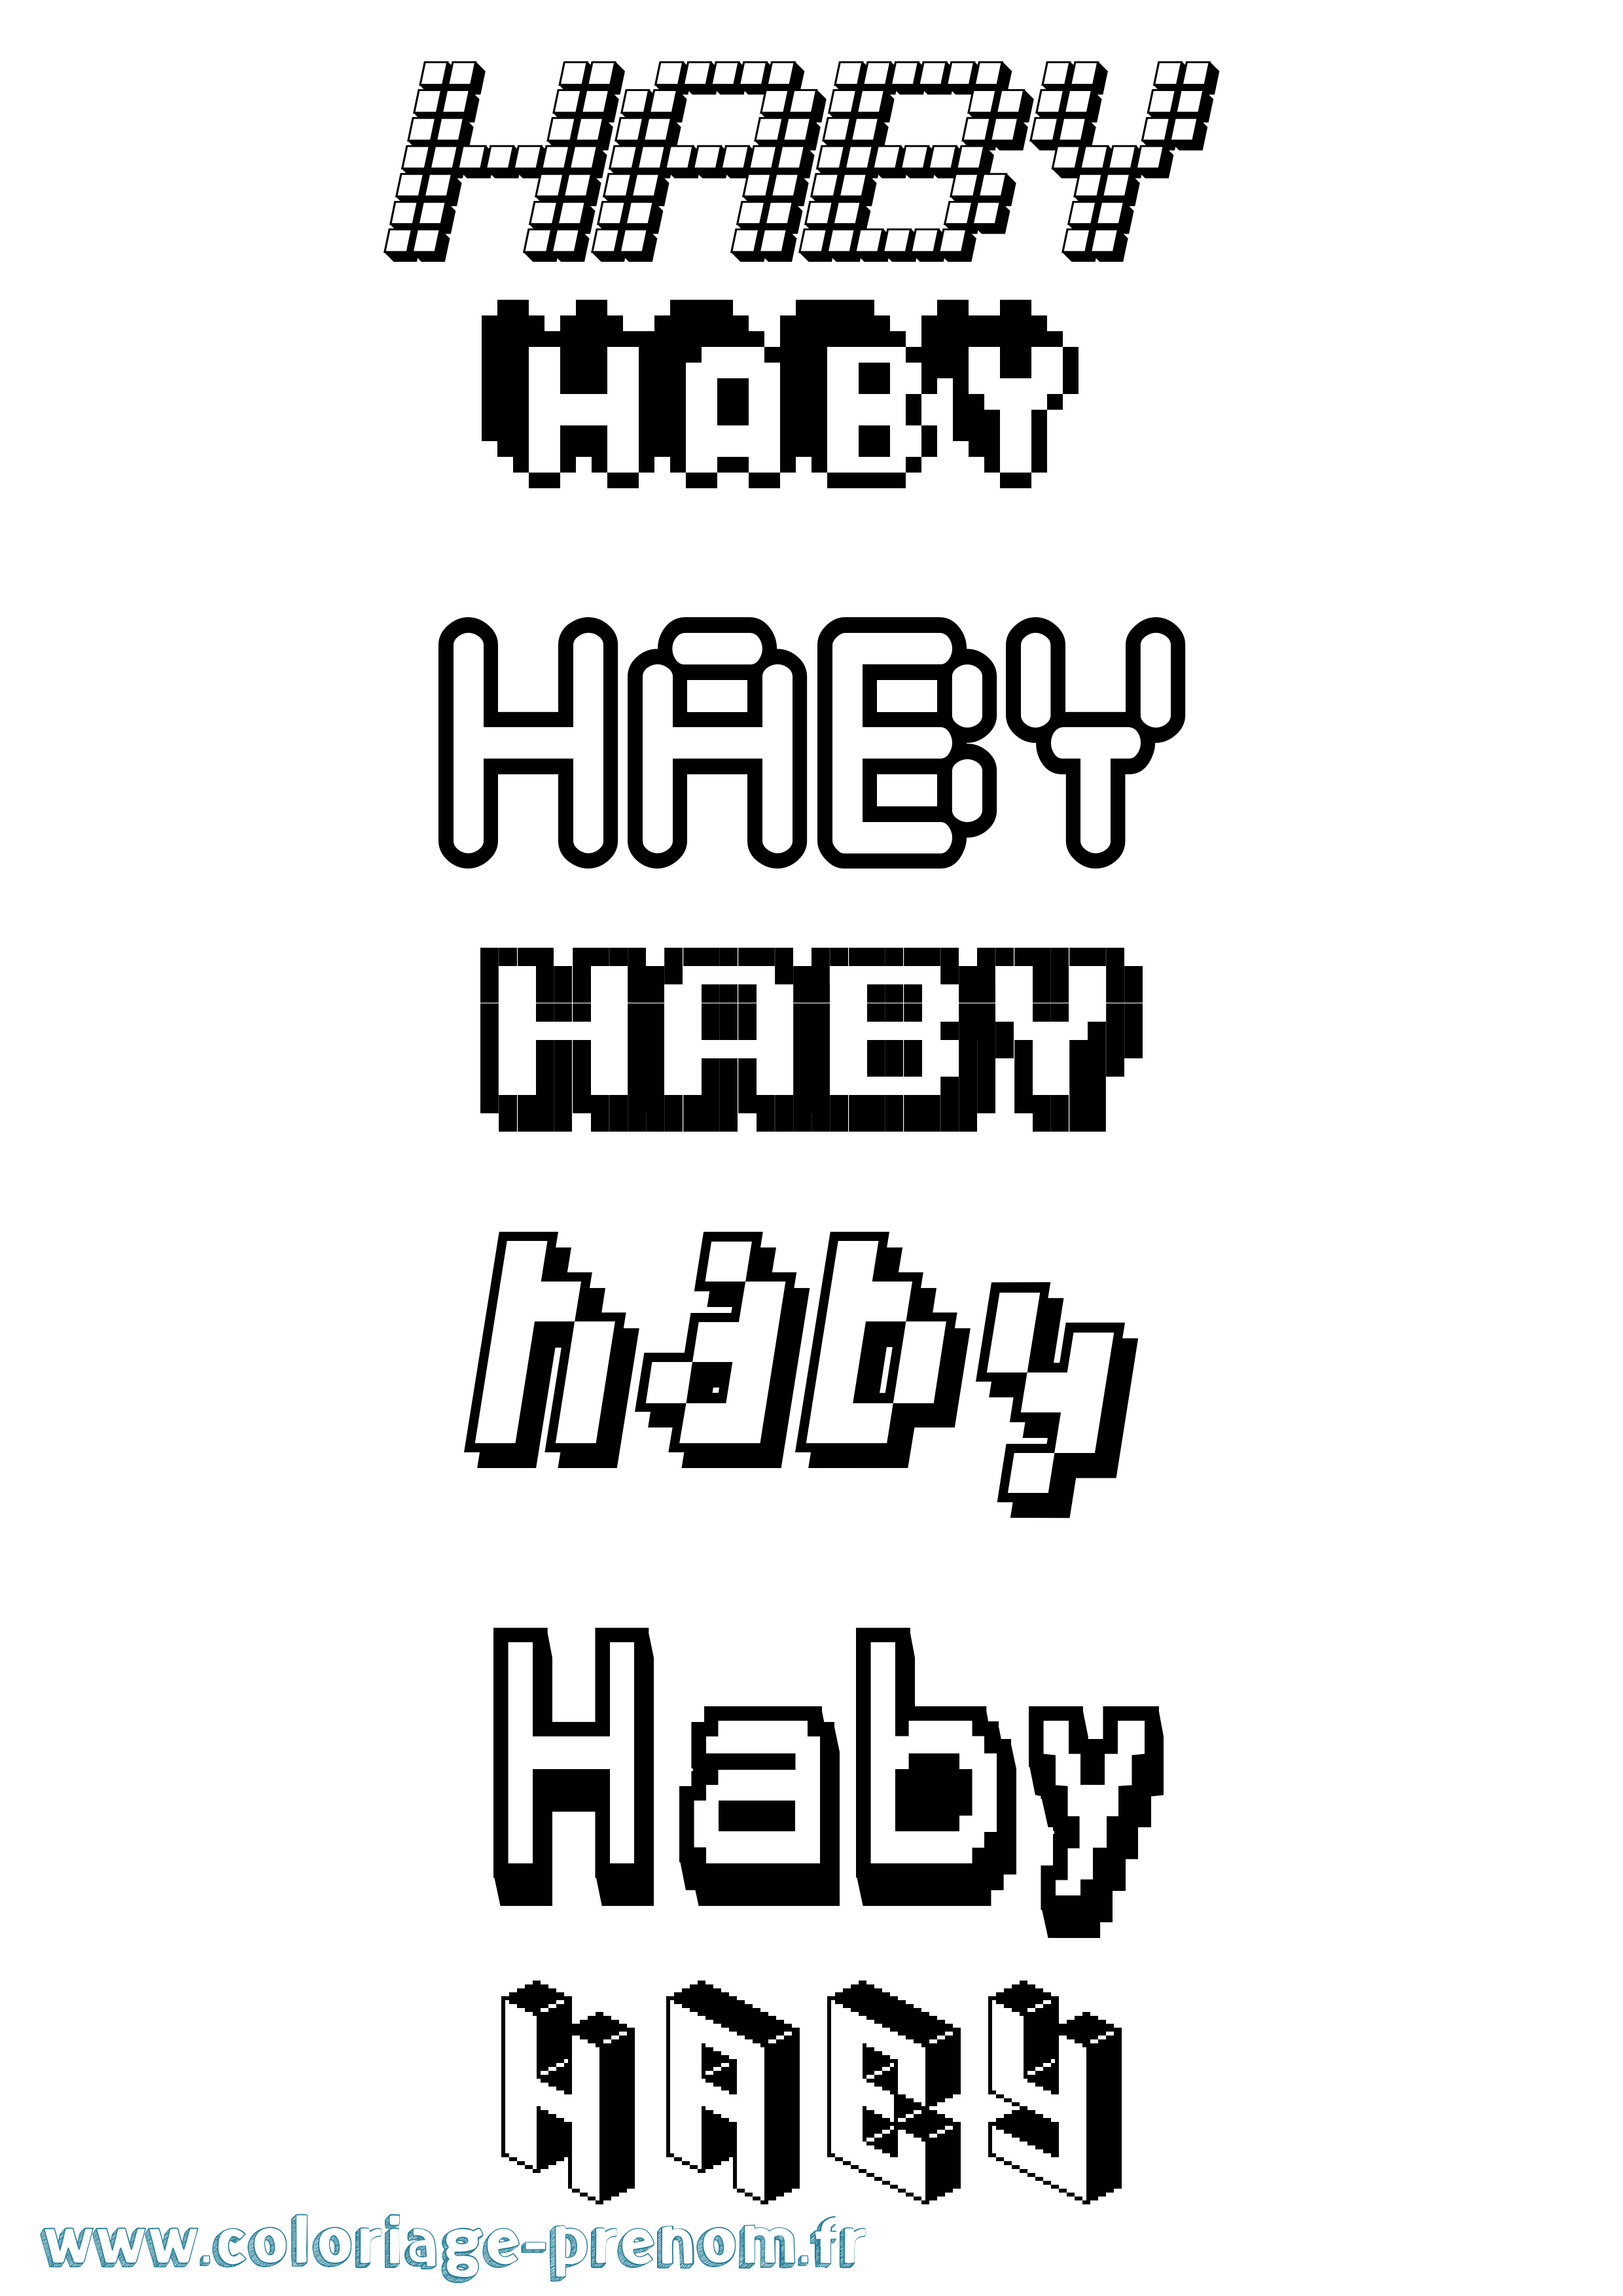 Coloriage prénom Haby